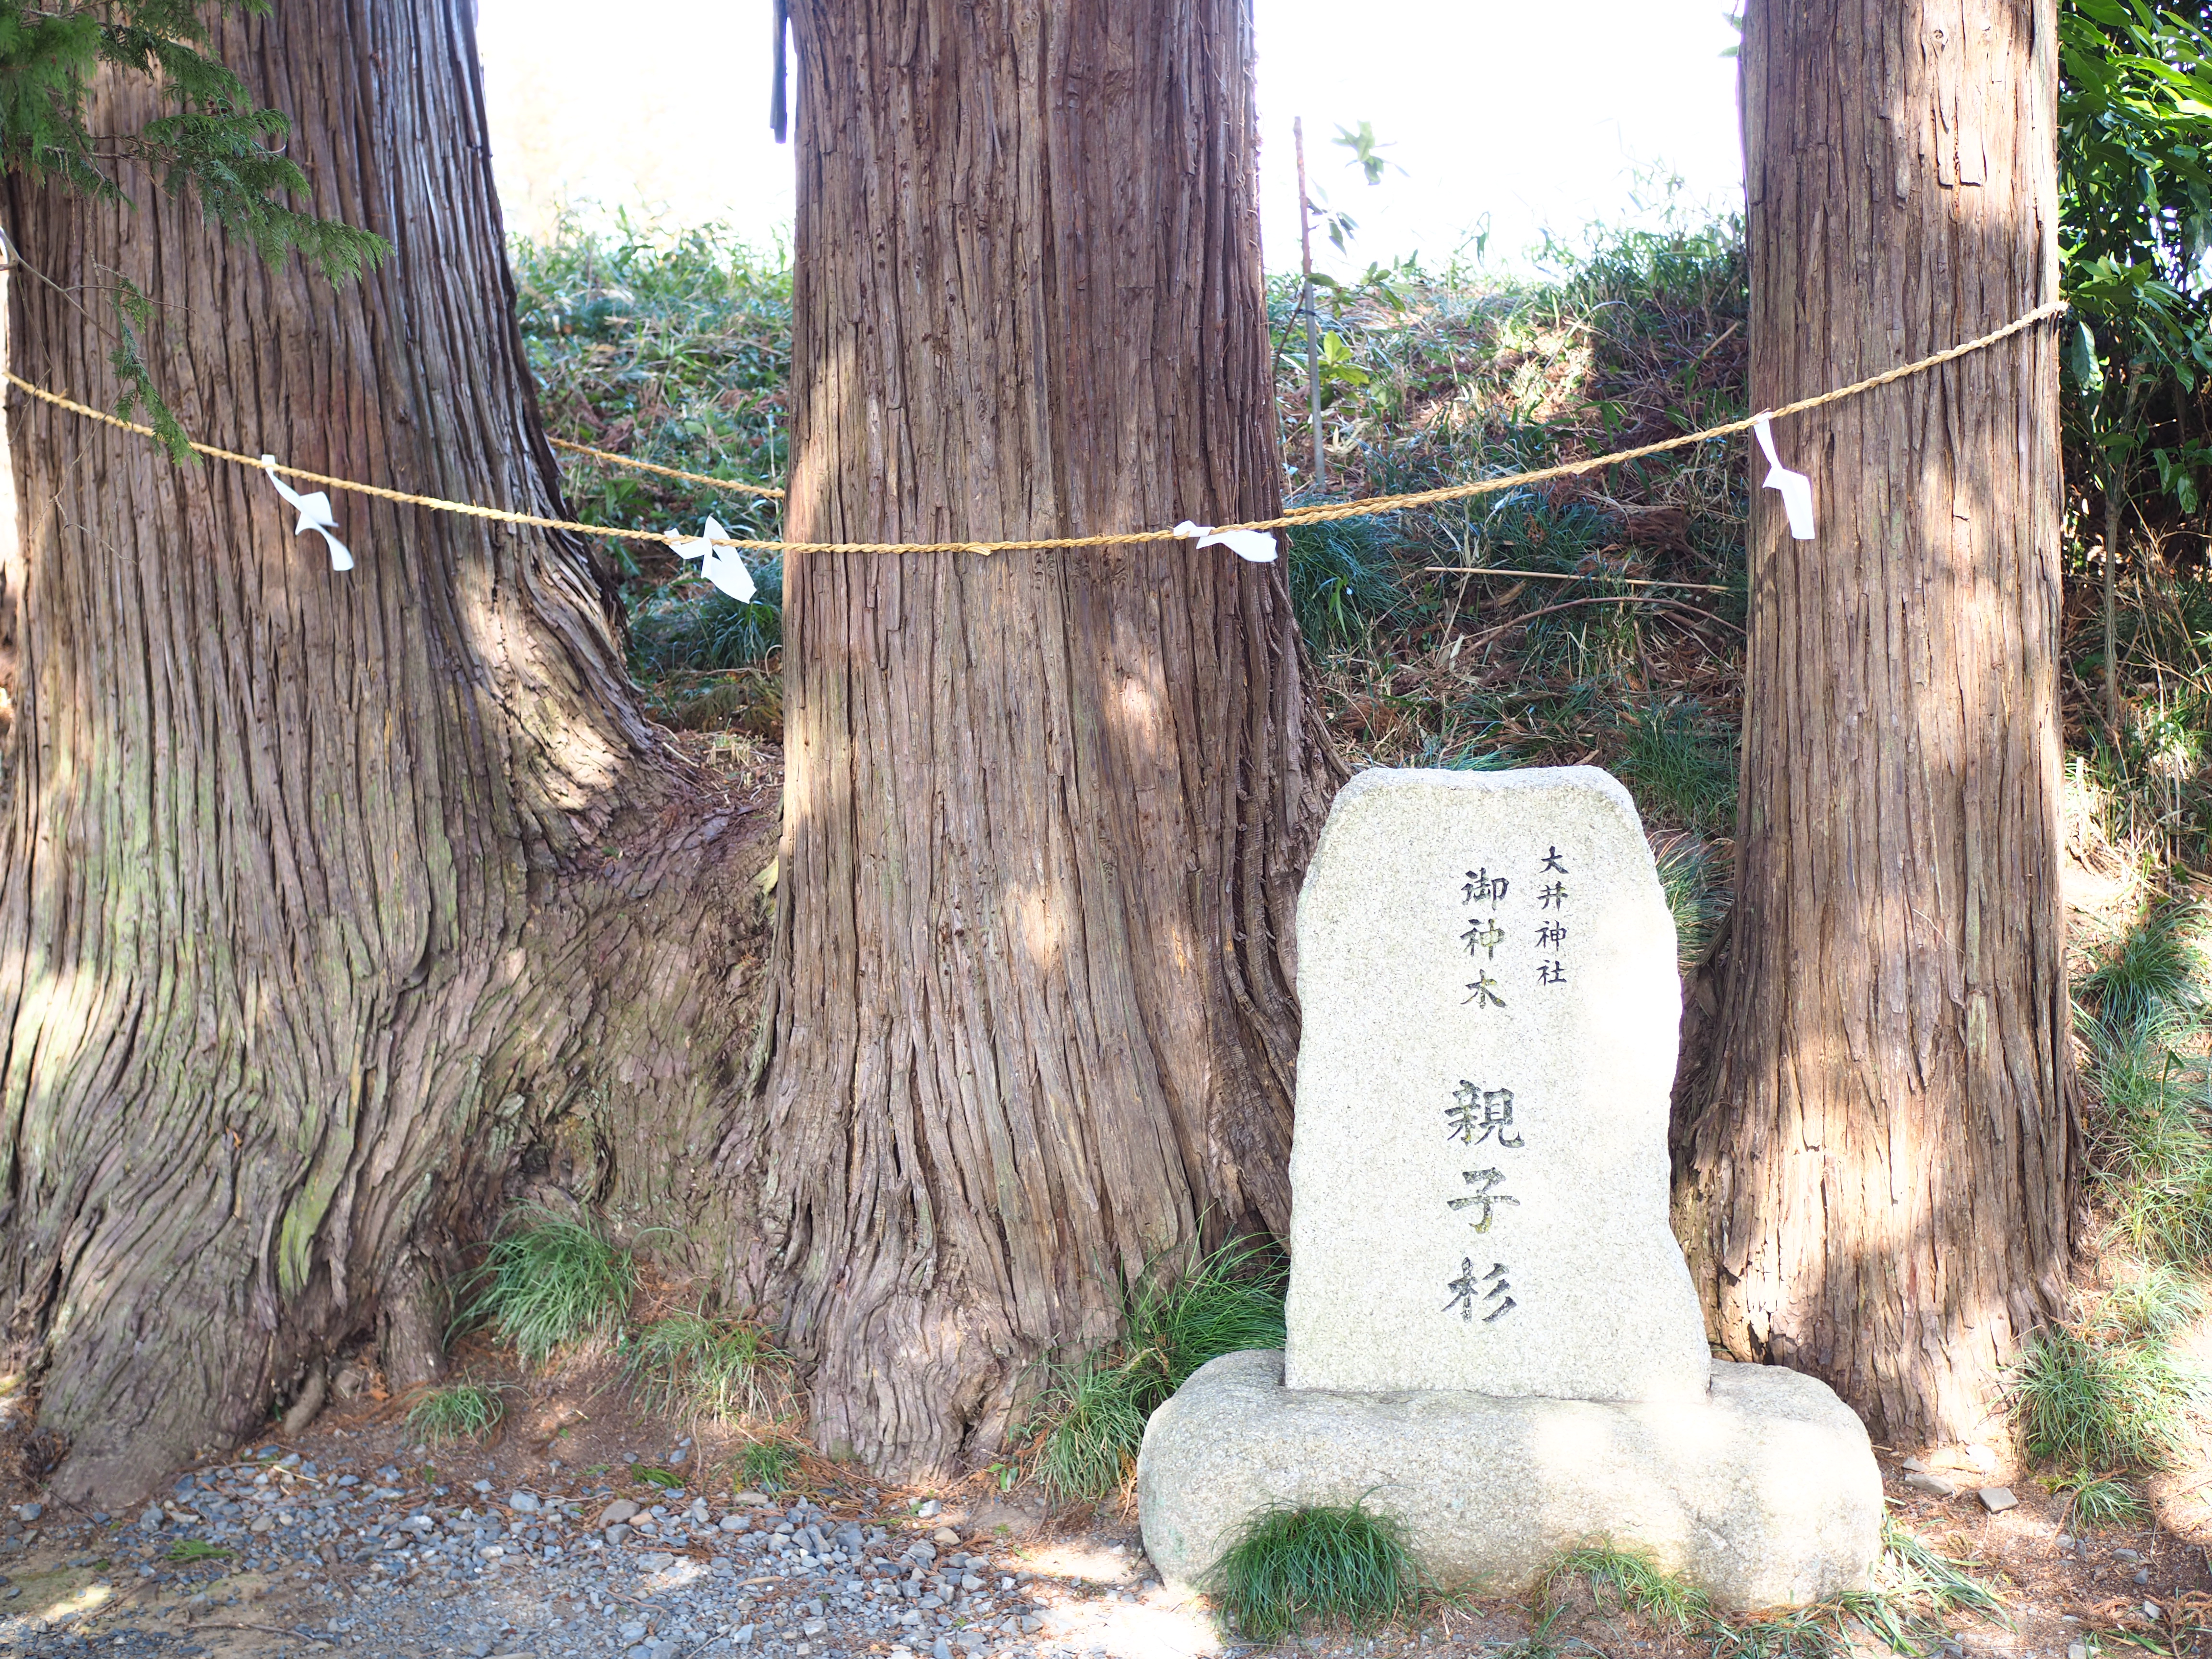 〈大井神社〉の平安時代の面影を感じる、樹齢数百年の長い参道の画像